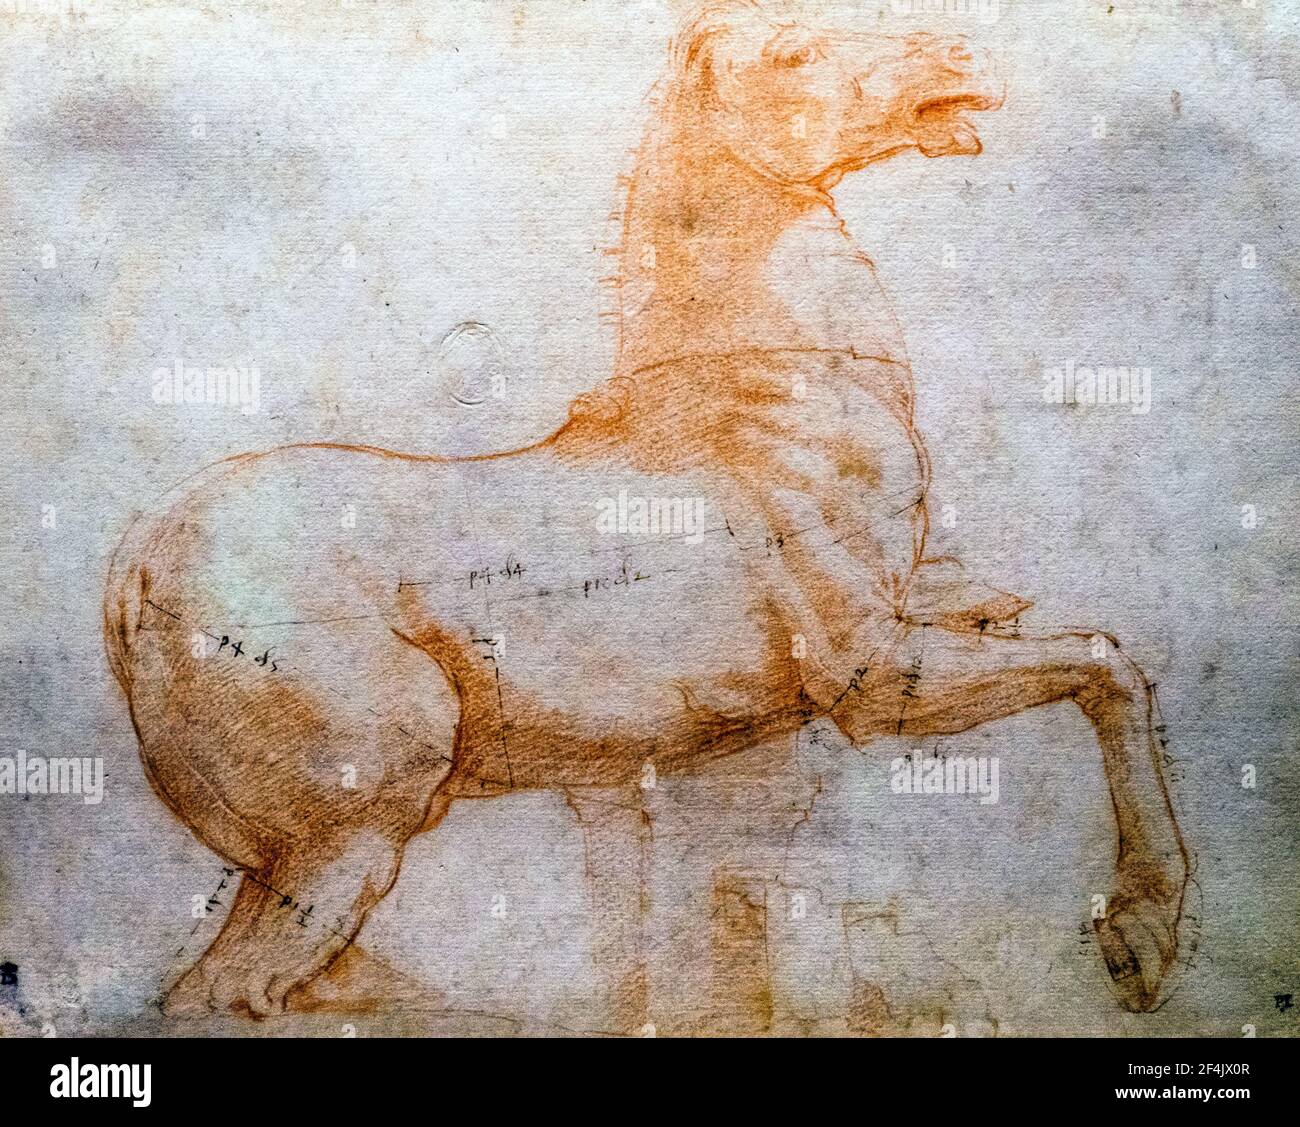 Cavallo dell'antico gruppo dei Dioscuri sulla collina del Quirinall di Raffaello Sanzio conosciuto come Raffaello (1483-1520) circa 1514-1515 gesso rosso, stilo: Misurazione non di Raffaello, penna e inchiostro marrone Foto Stock